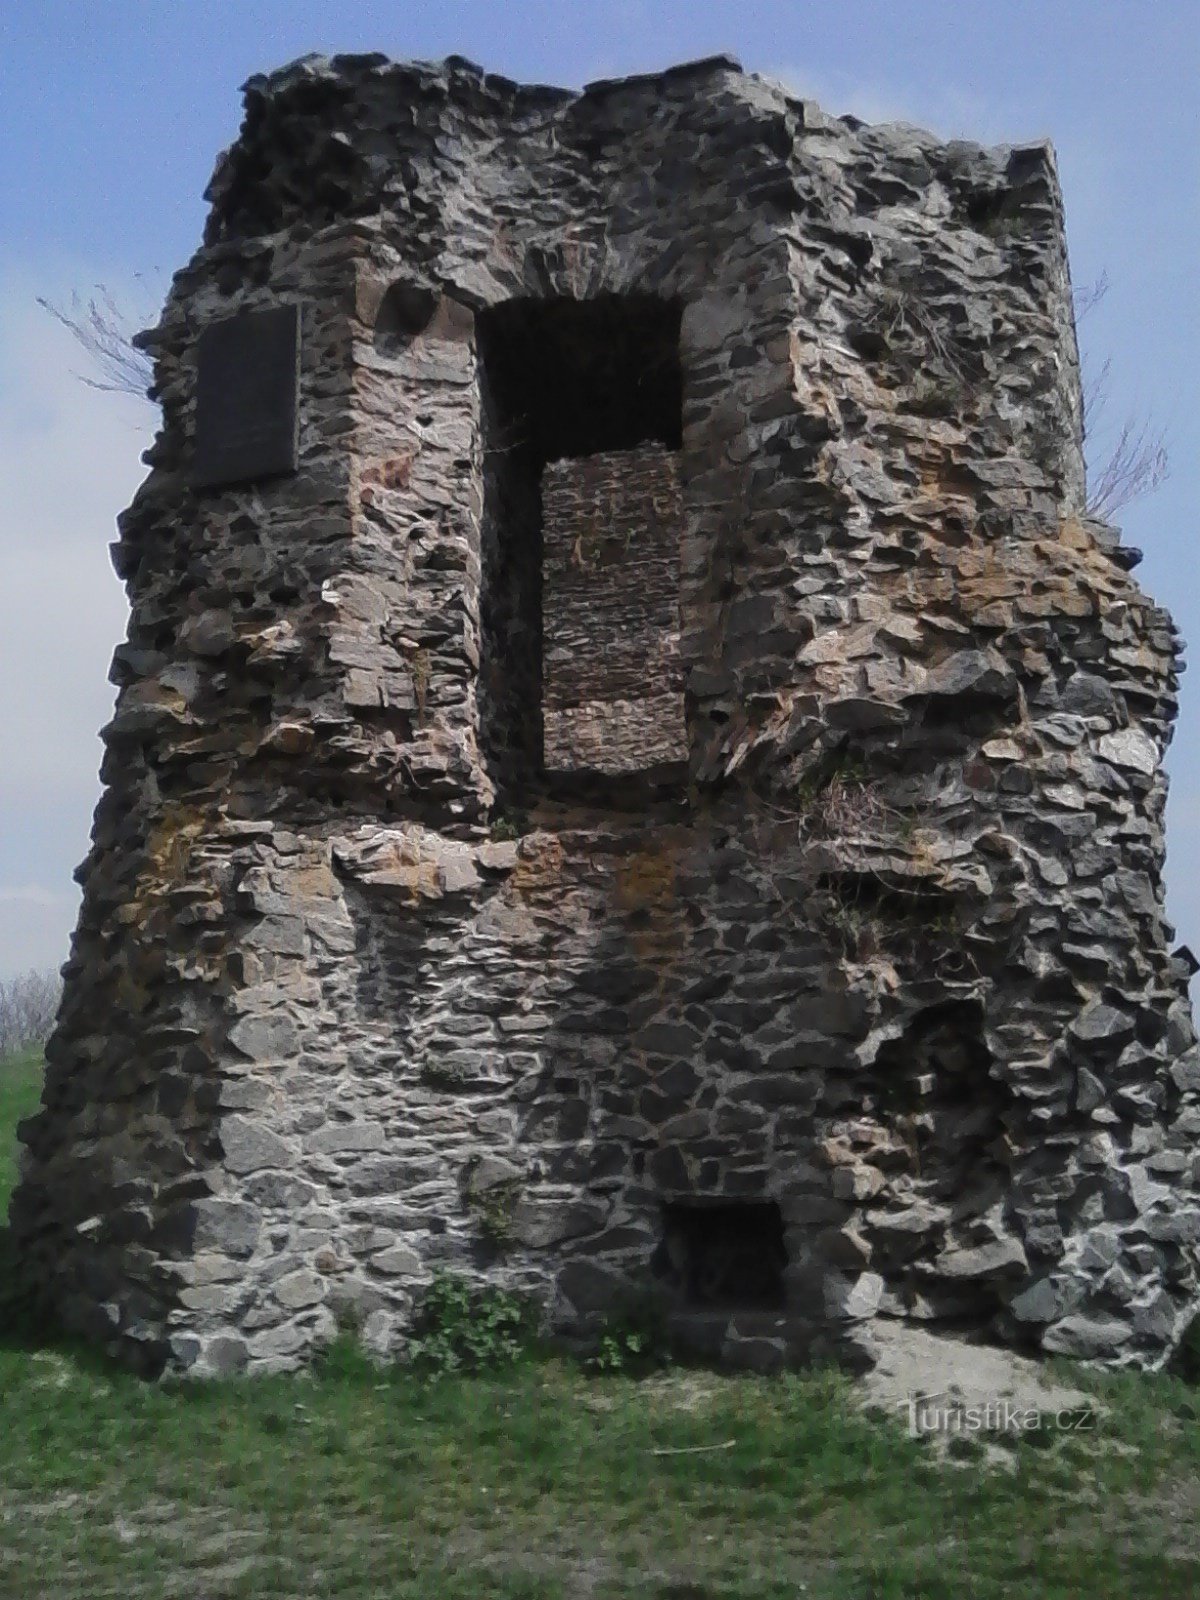 2. Parte delle mura del castello di Borotína, sopra c'è una targa che commemora la visita di KH Mácha.